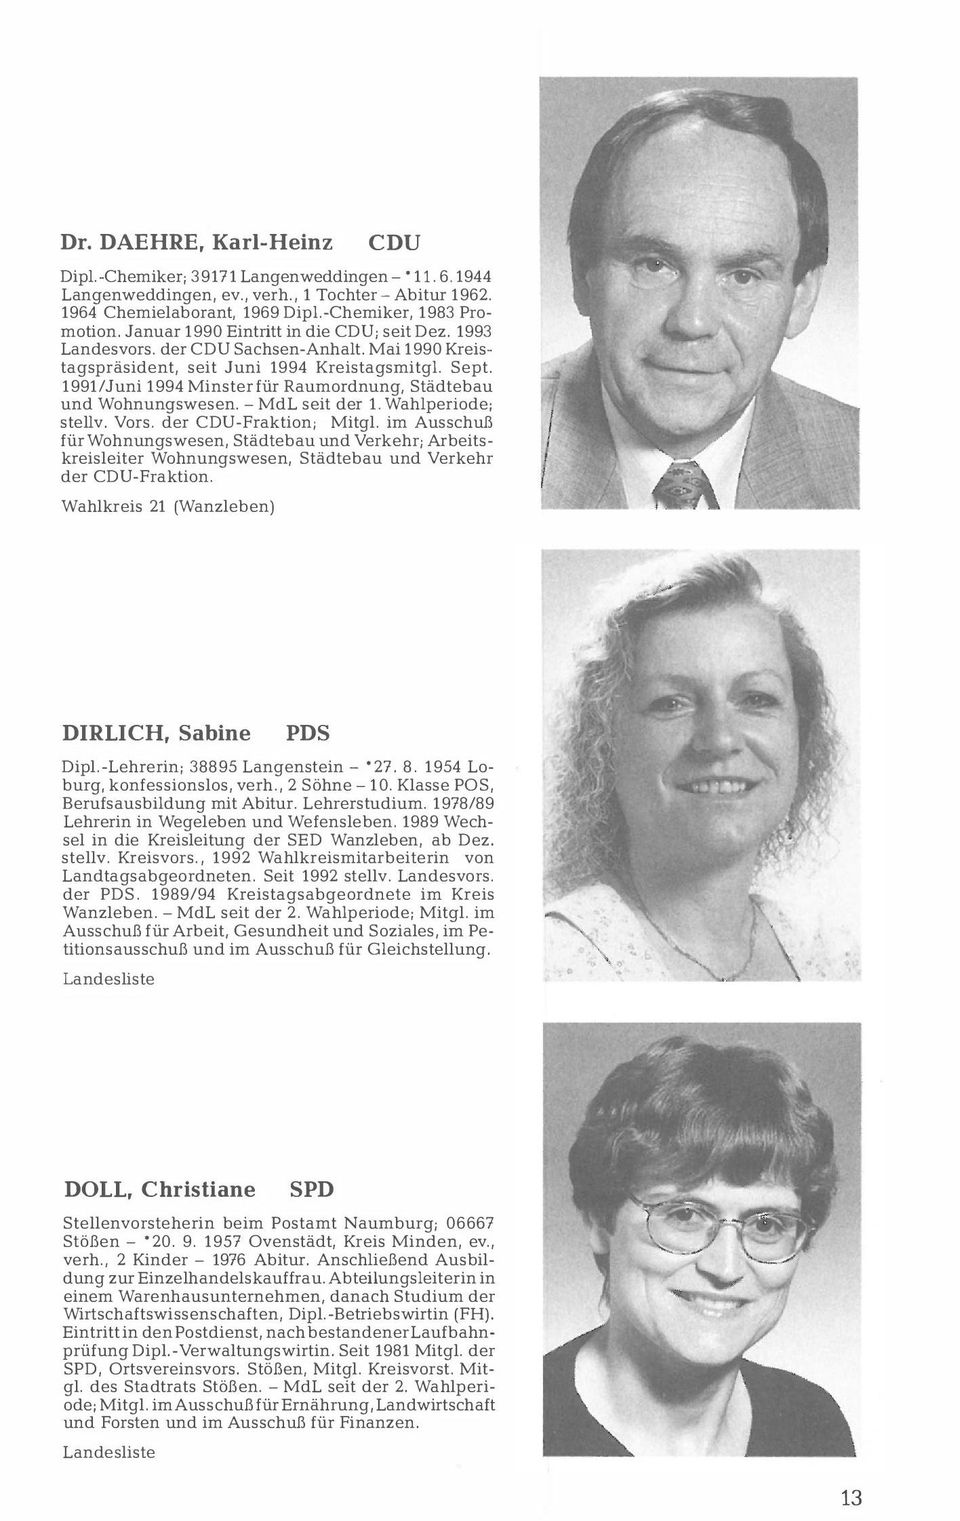 1991/Juni 1994 Minster für Raumordnung, Städtebau und Wohnungswesen. - MdL seit der 1. Wahlperiode; stellv. Vors. der -Fraktion; Mitgl.